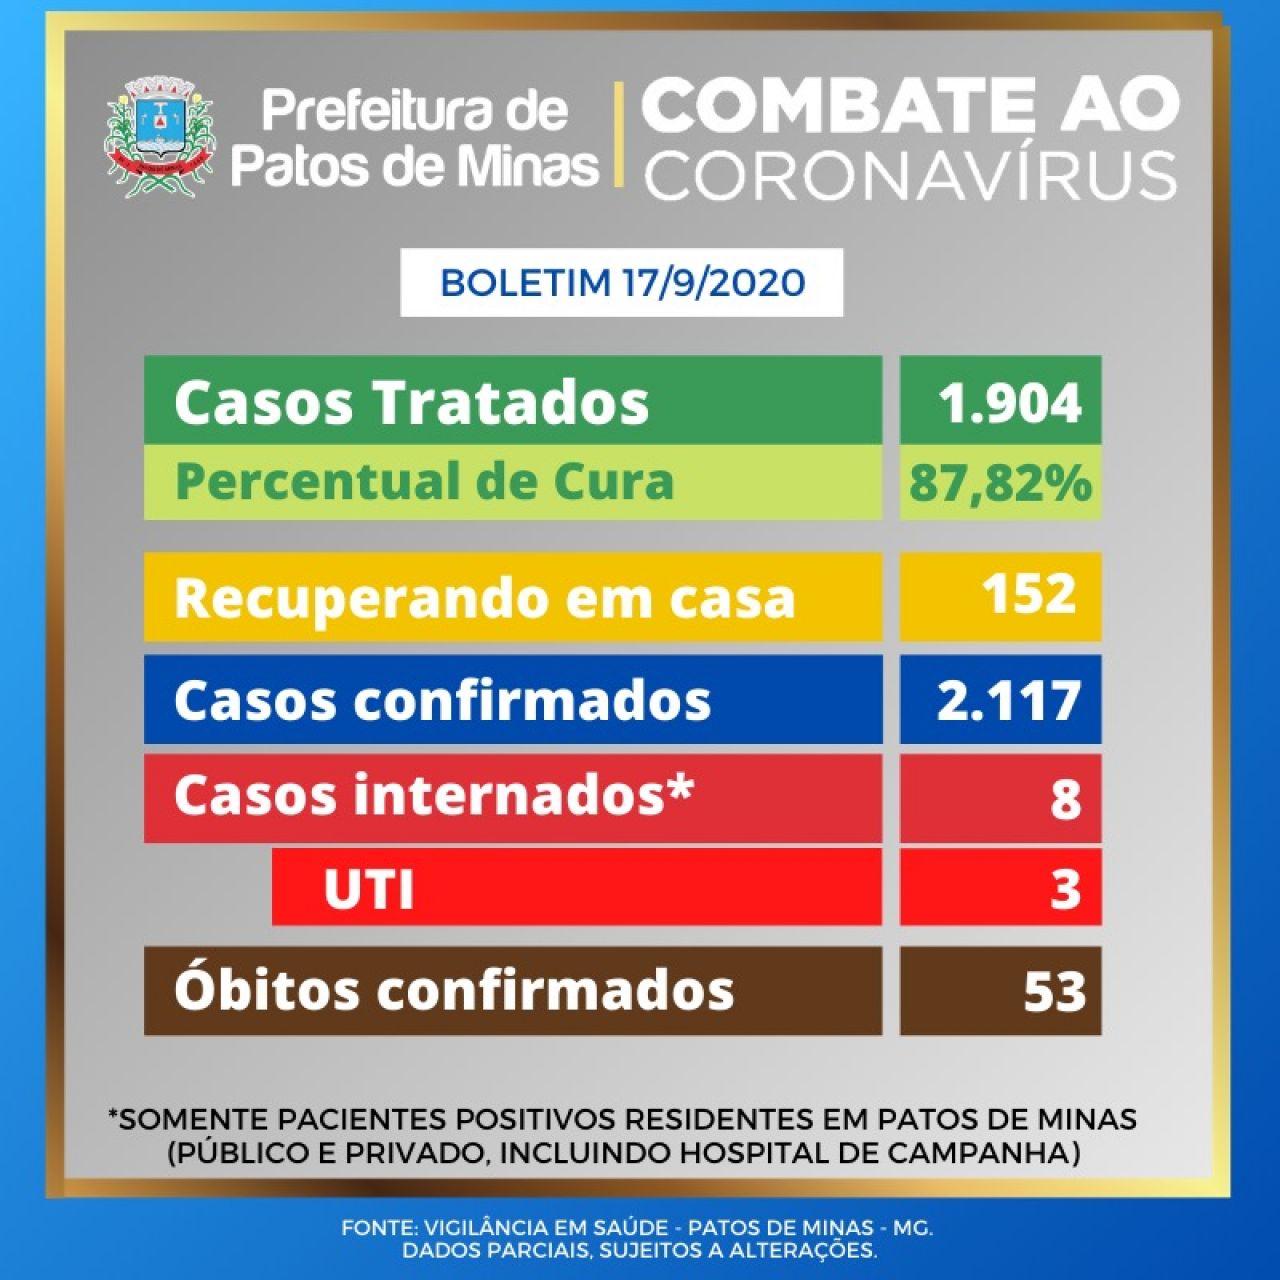 Covid-19: Patos de Minas registrou 2.148 casos confirmados com 87,82% de taxa de cura